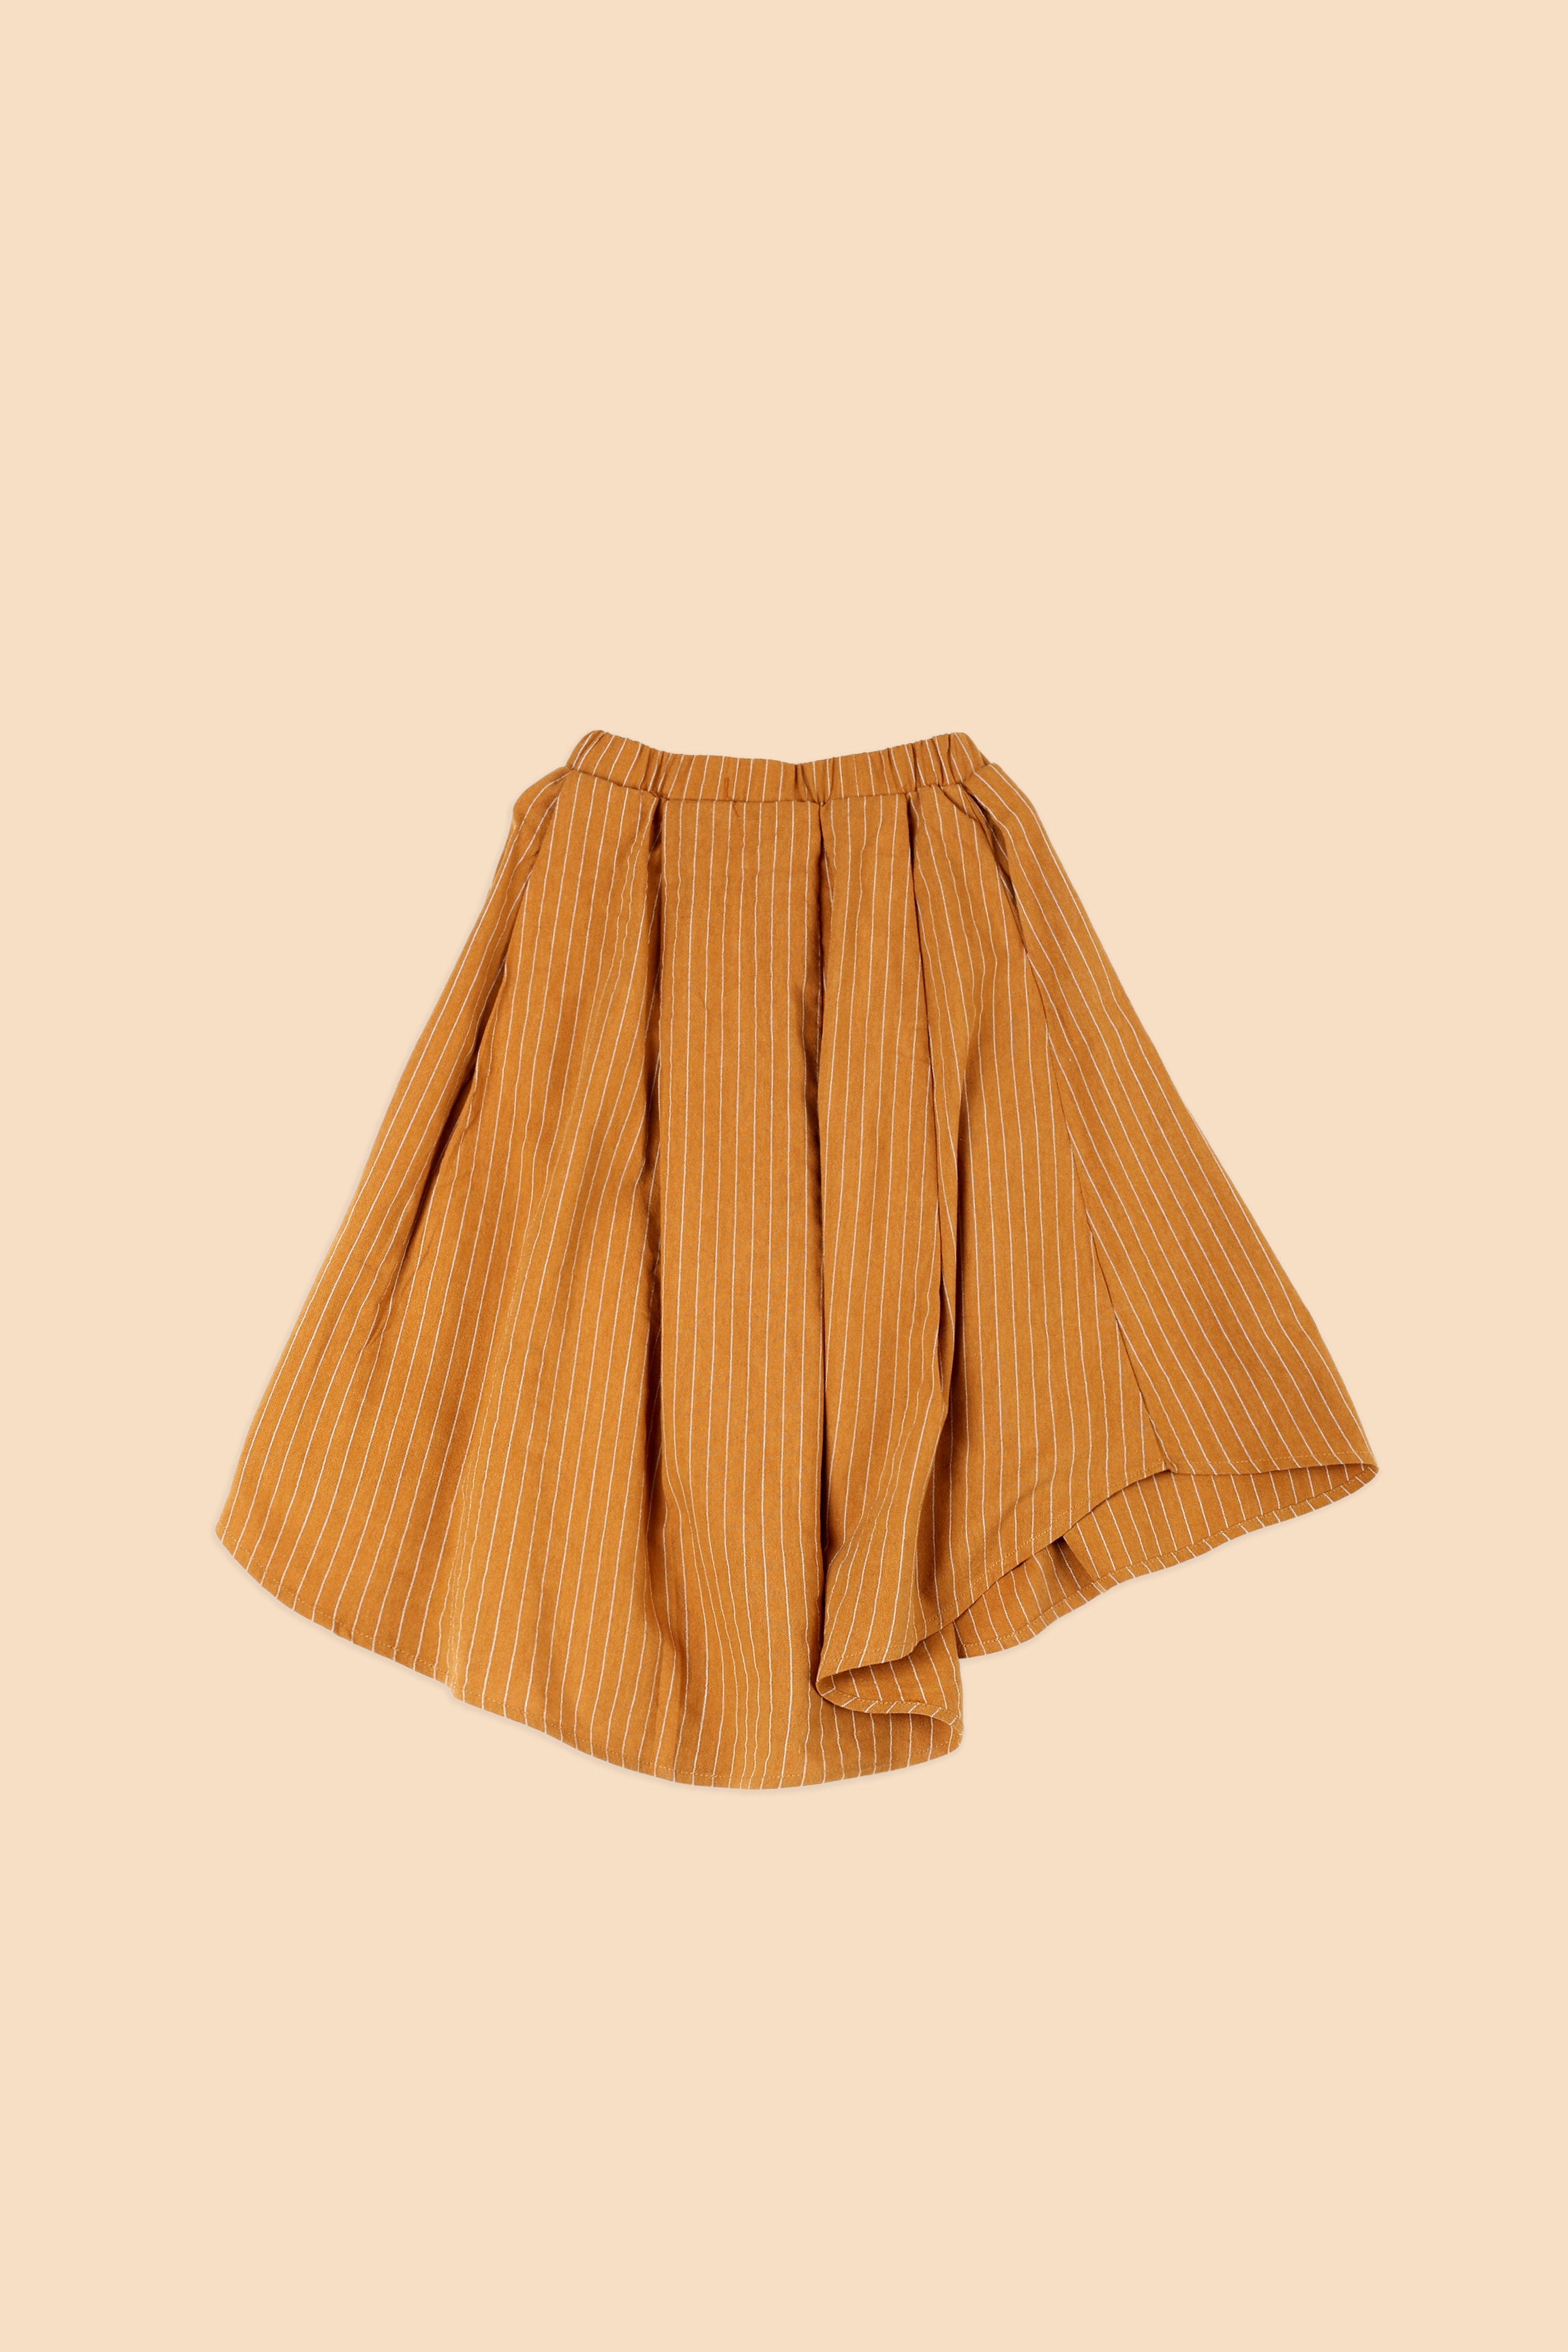 The Nostalgia Teacup Skirt Brown Stripes